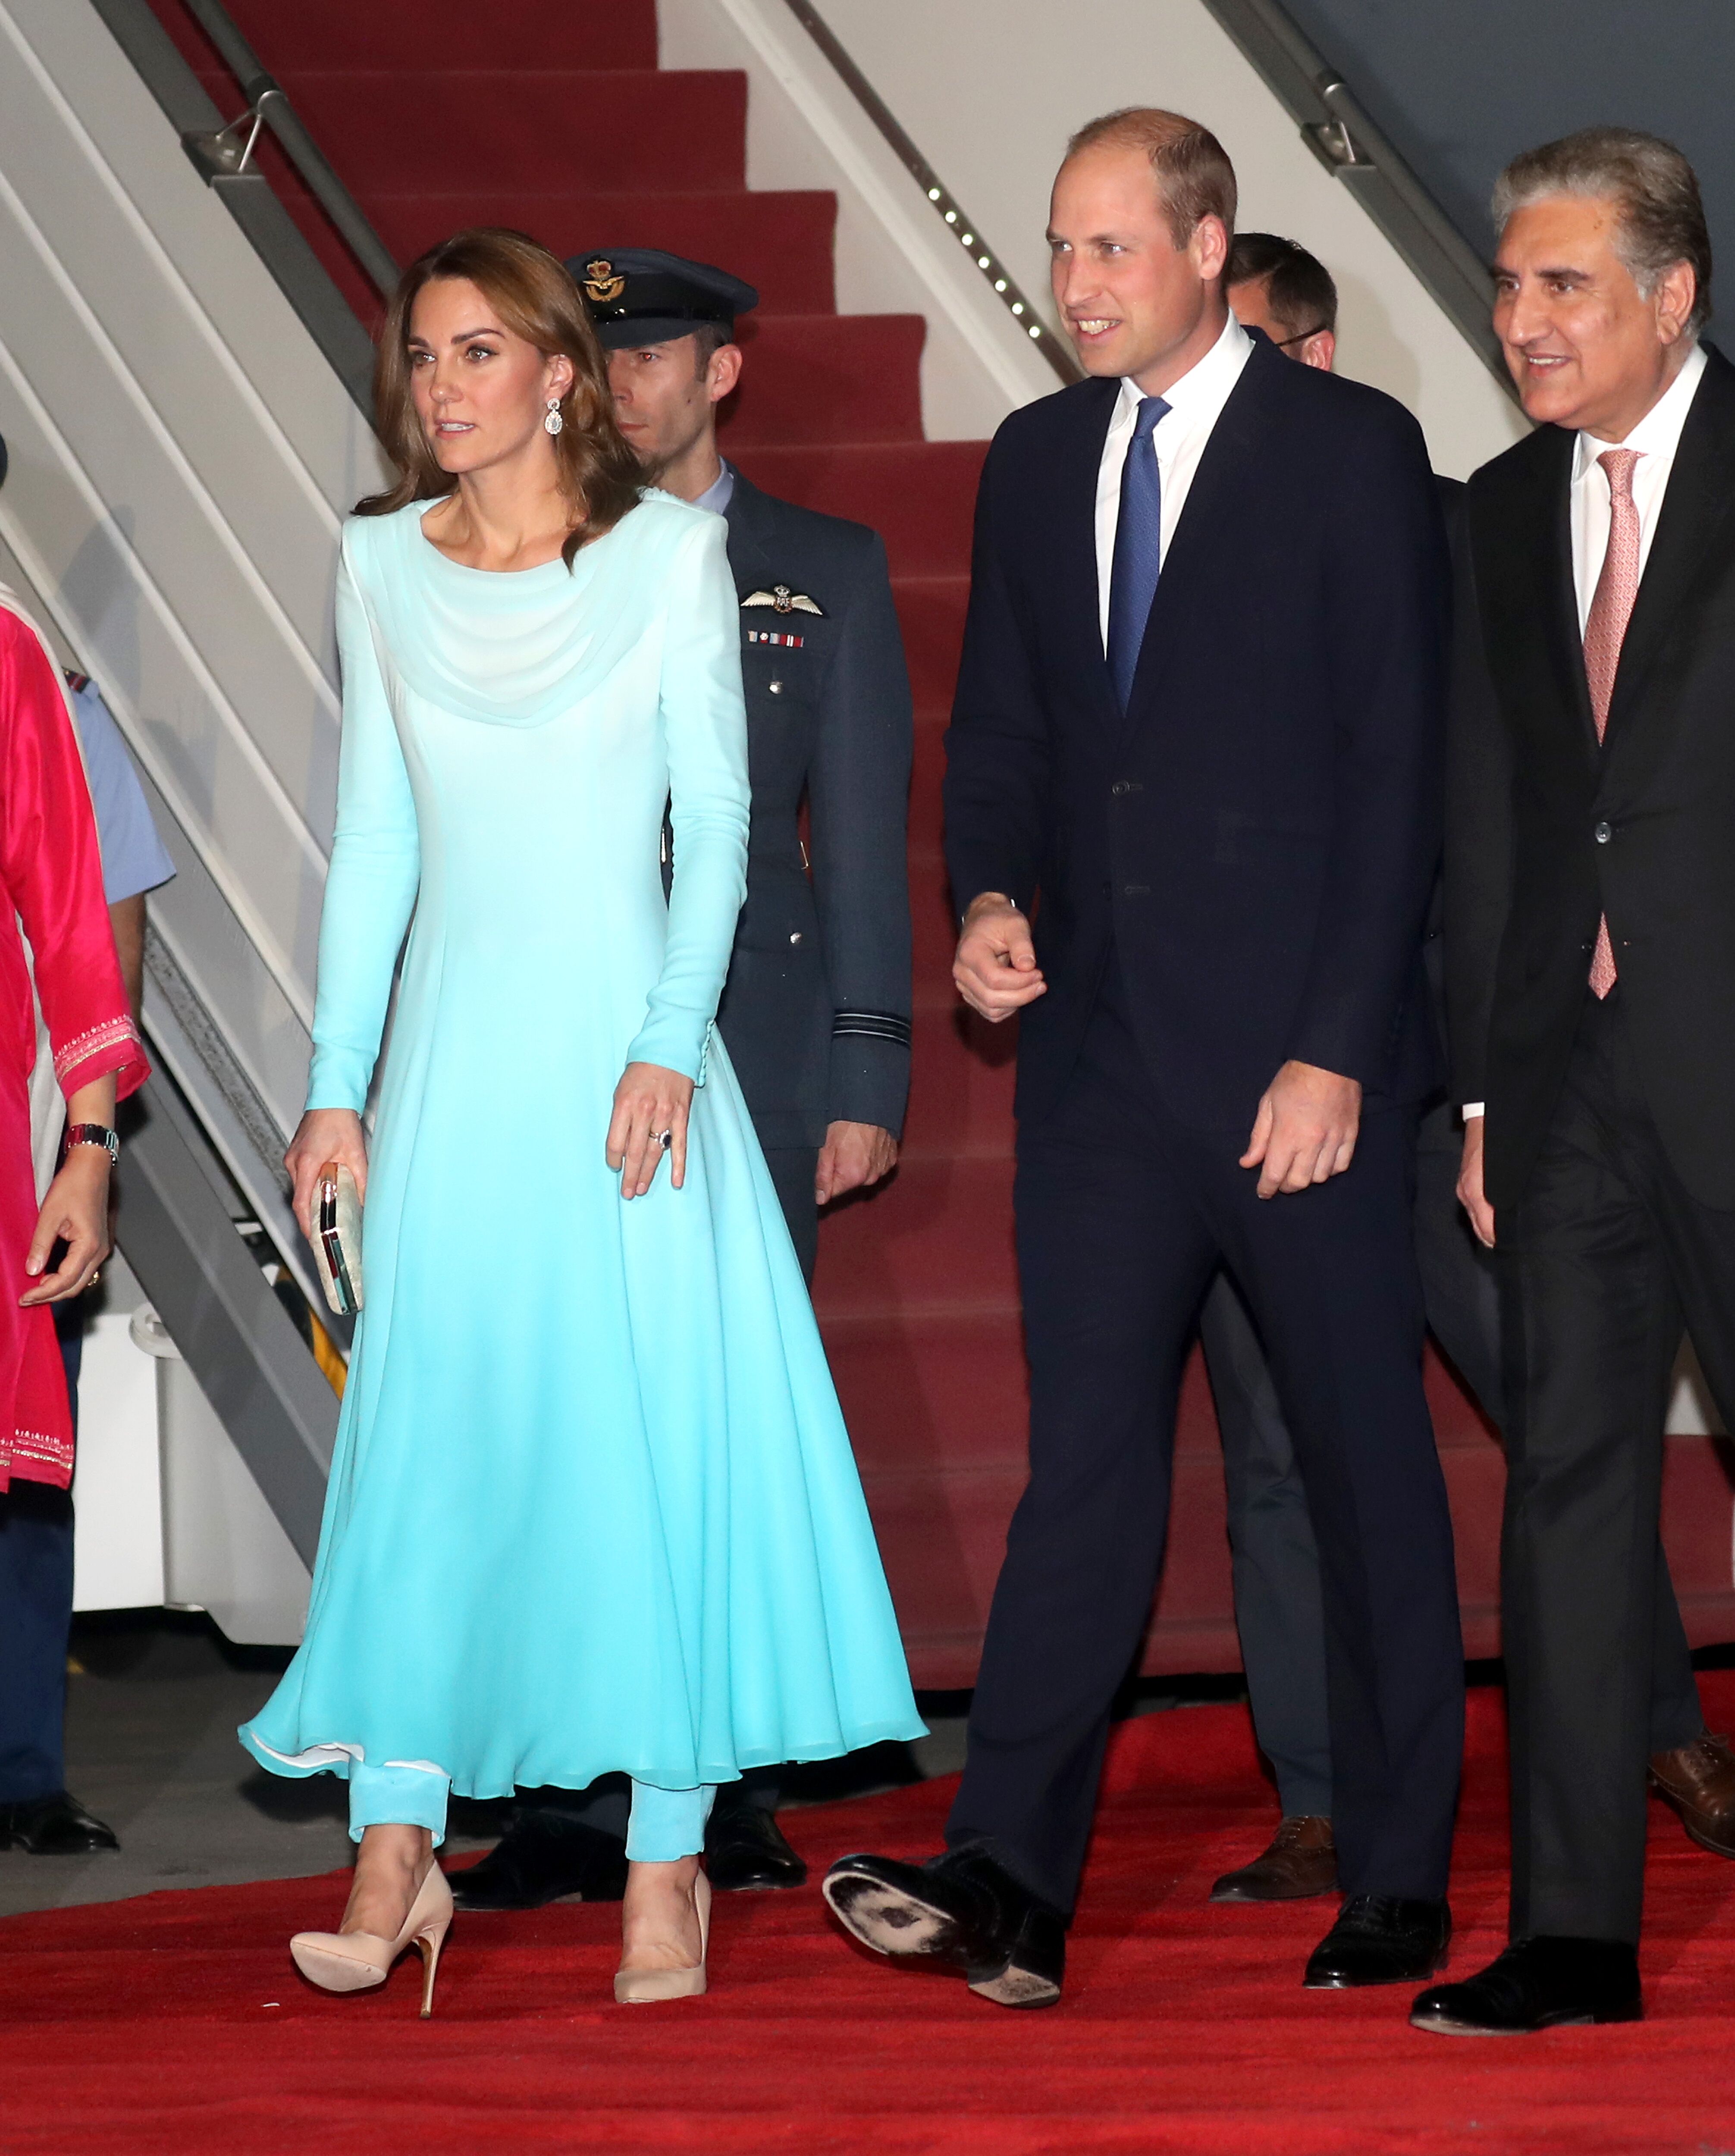 La duchesse de Cambridge et le prince William et le duc de Cambridge arrivent à la base aérienne de Kur Khan en prévision de leur tournée royale au Pakistan le 14 octobre 2019 à Rawalpindi (Pakistan) | Photo: Getty Images